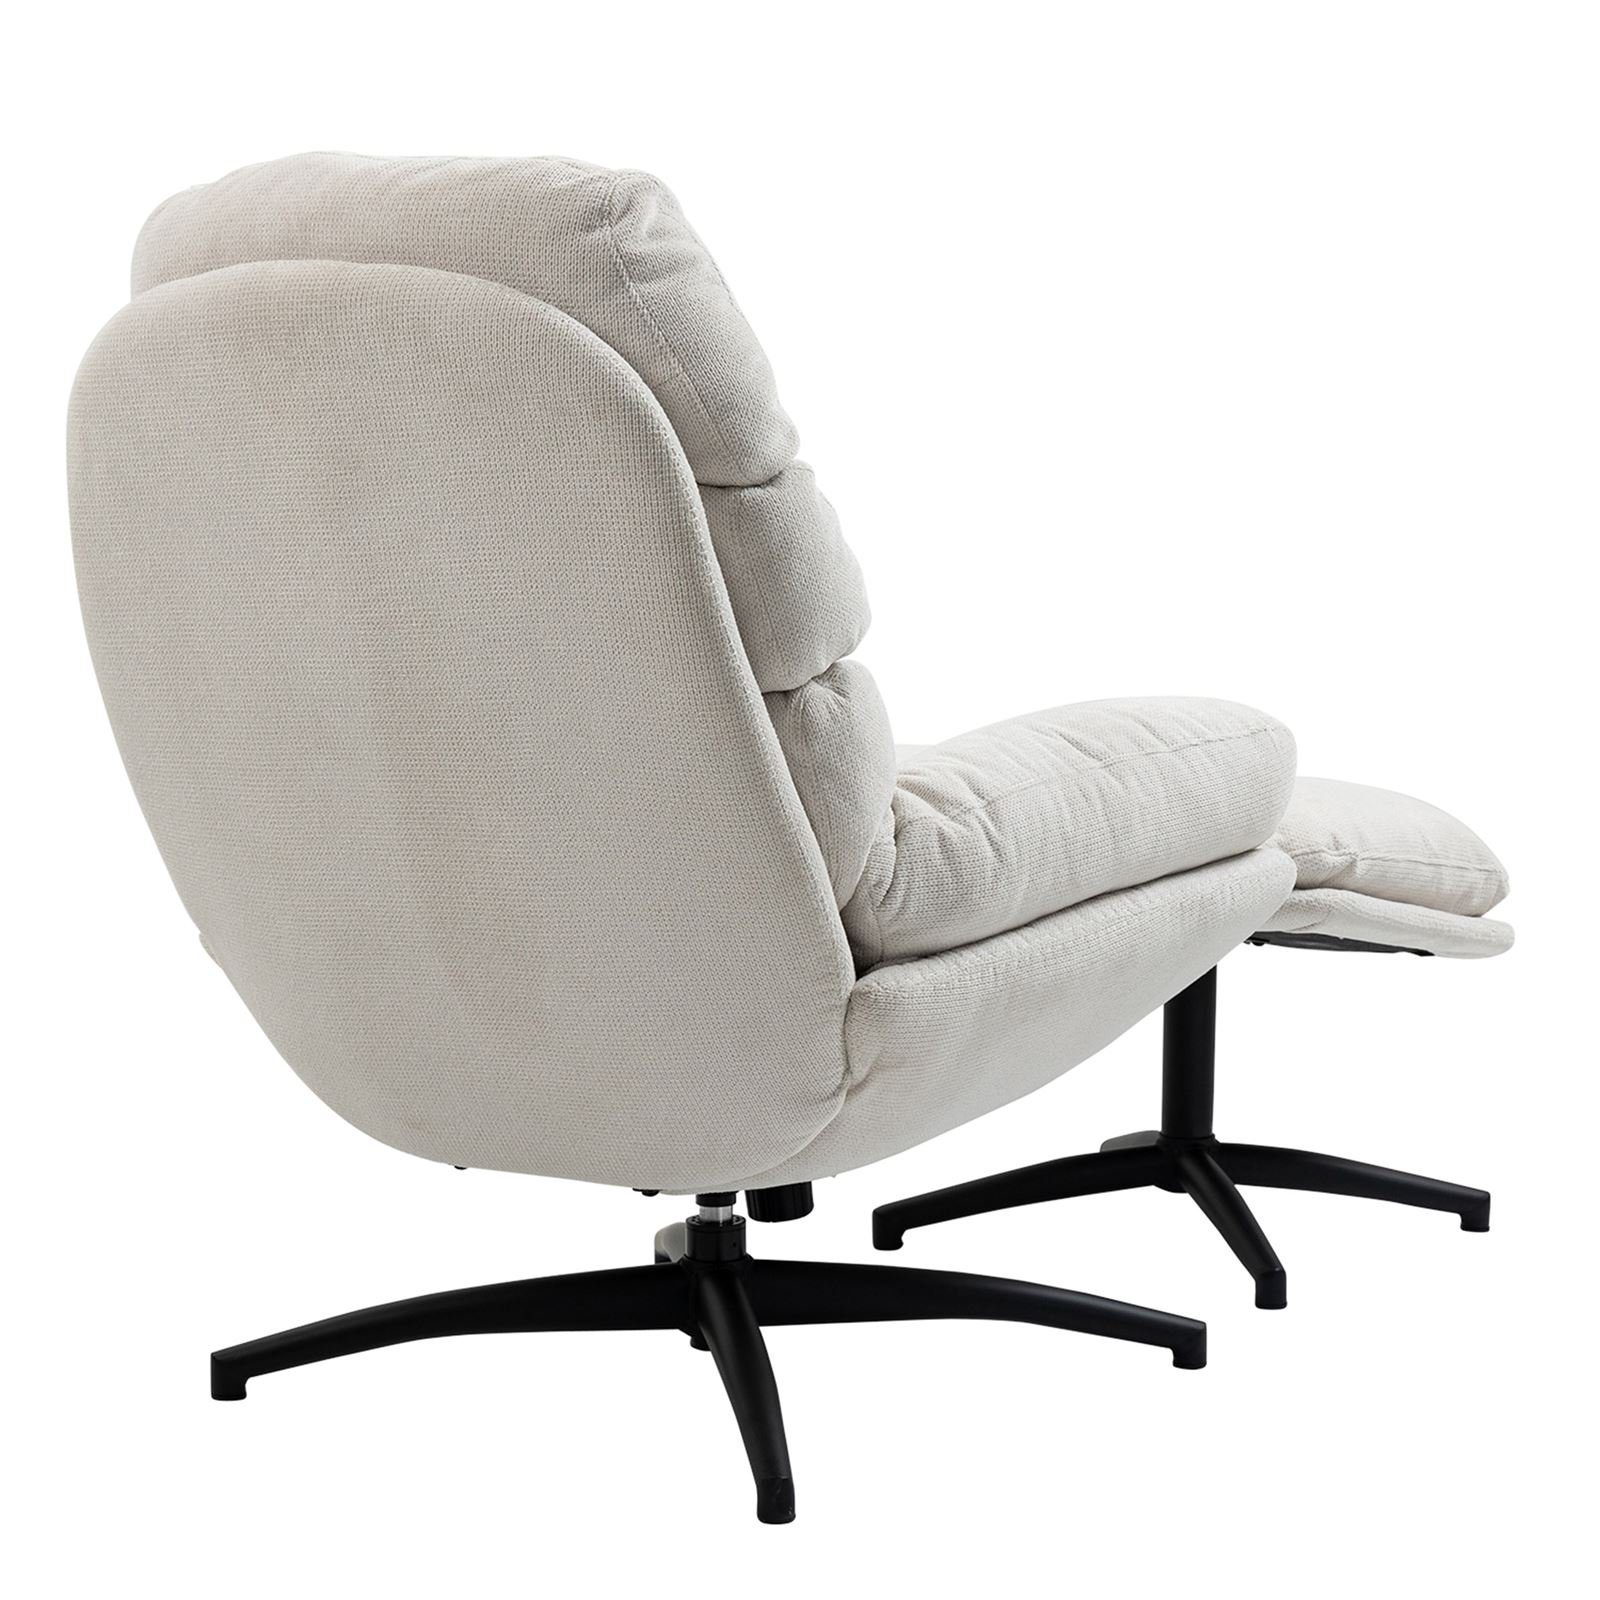 CARO-Möbel Relaxsessel, Relaxsessel mit Modern Polstersessel Wohnzimmer beige Metall Stoff Hocker